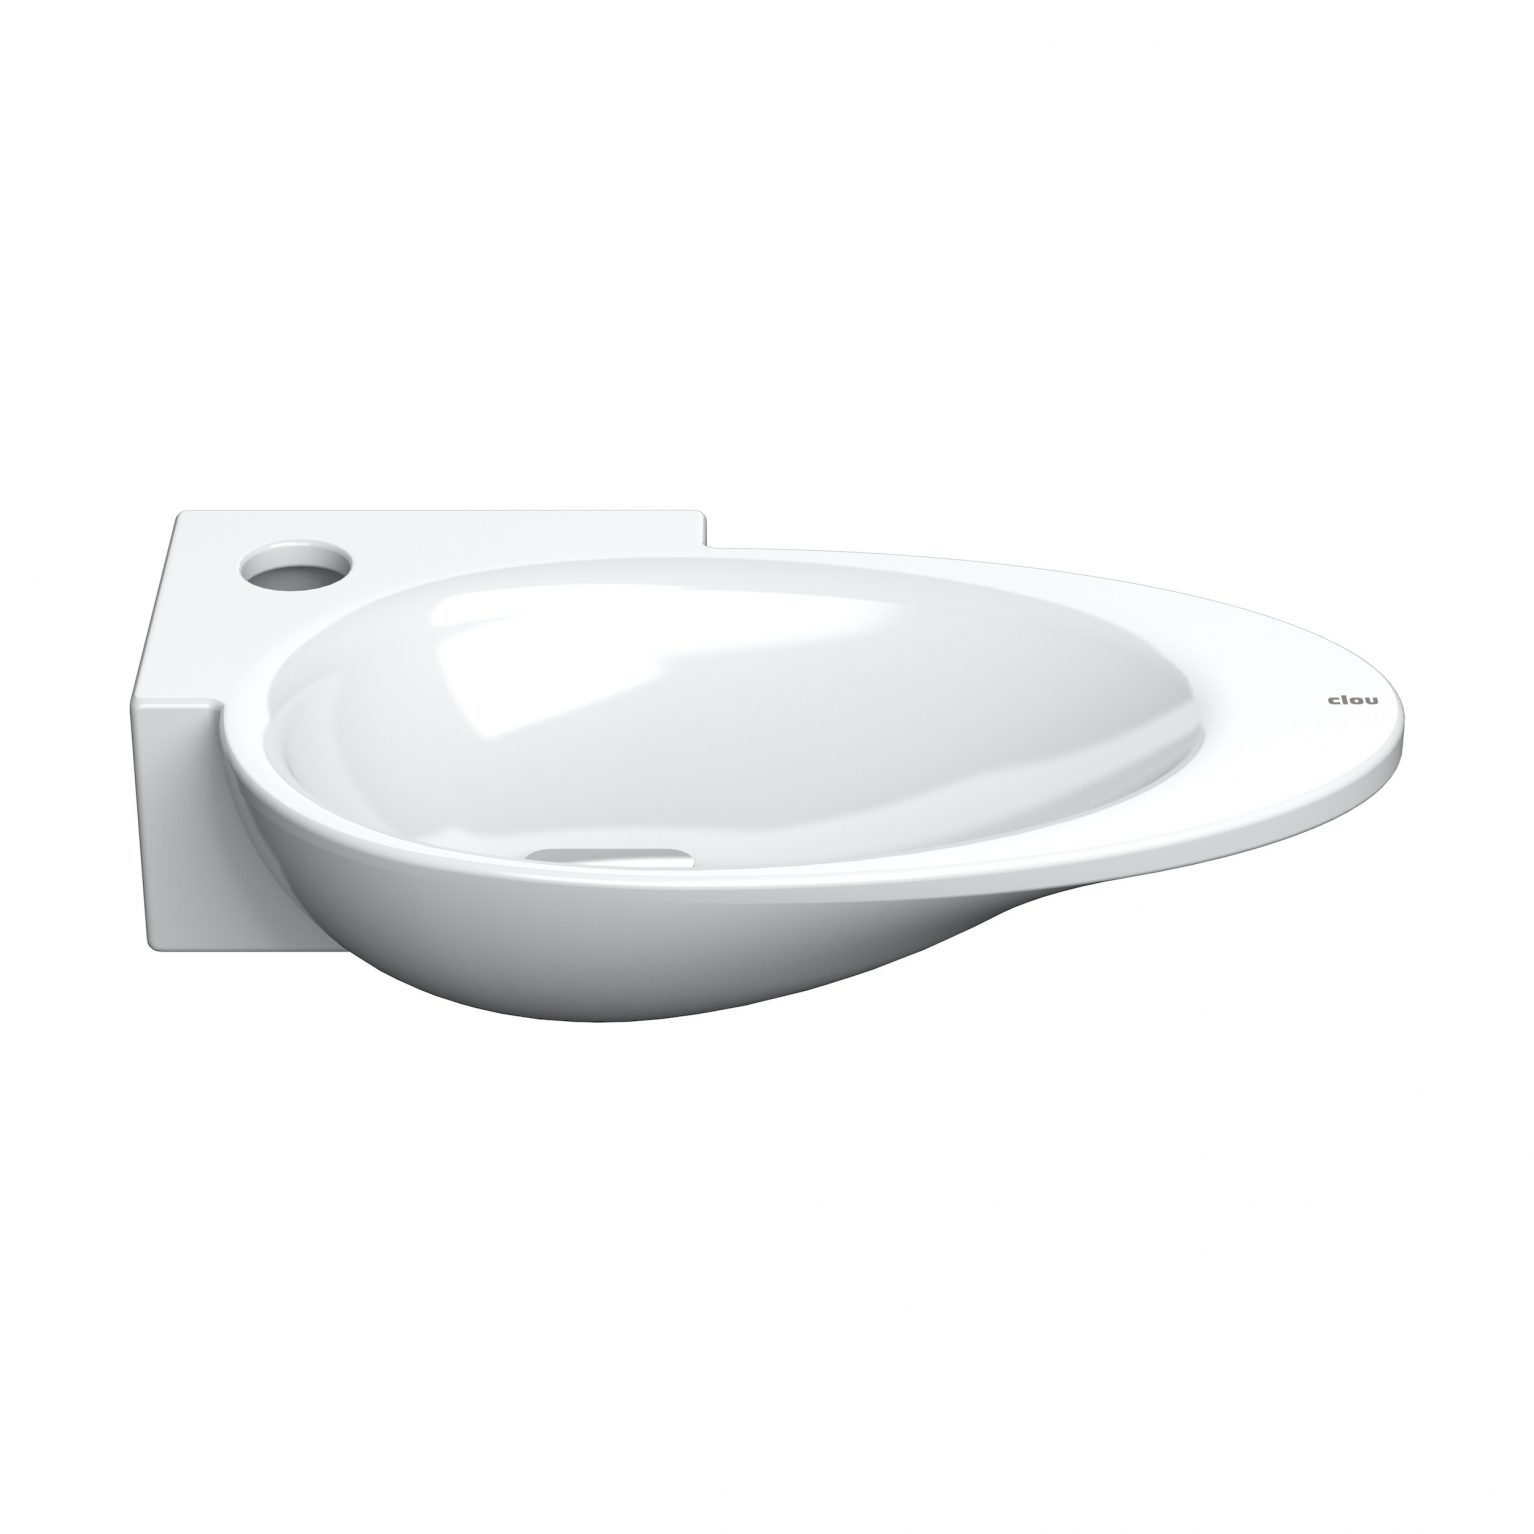 fontein-wastafel-wit-keramiek-toilet-badkamer-luxe-sanitair-First-links-clou-CL0303101-wasbakje-met-afvoer-plug-kranenbank-kraangat